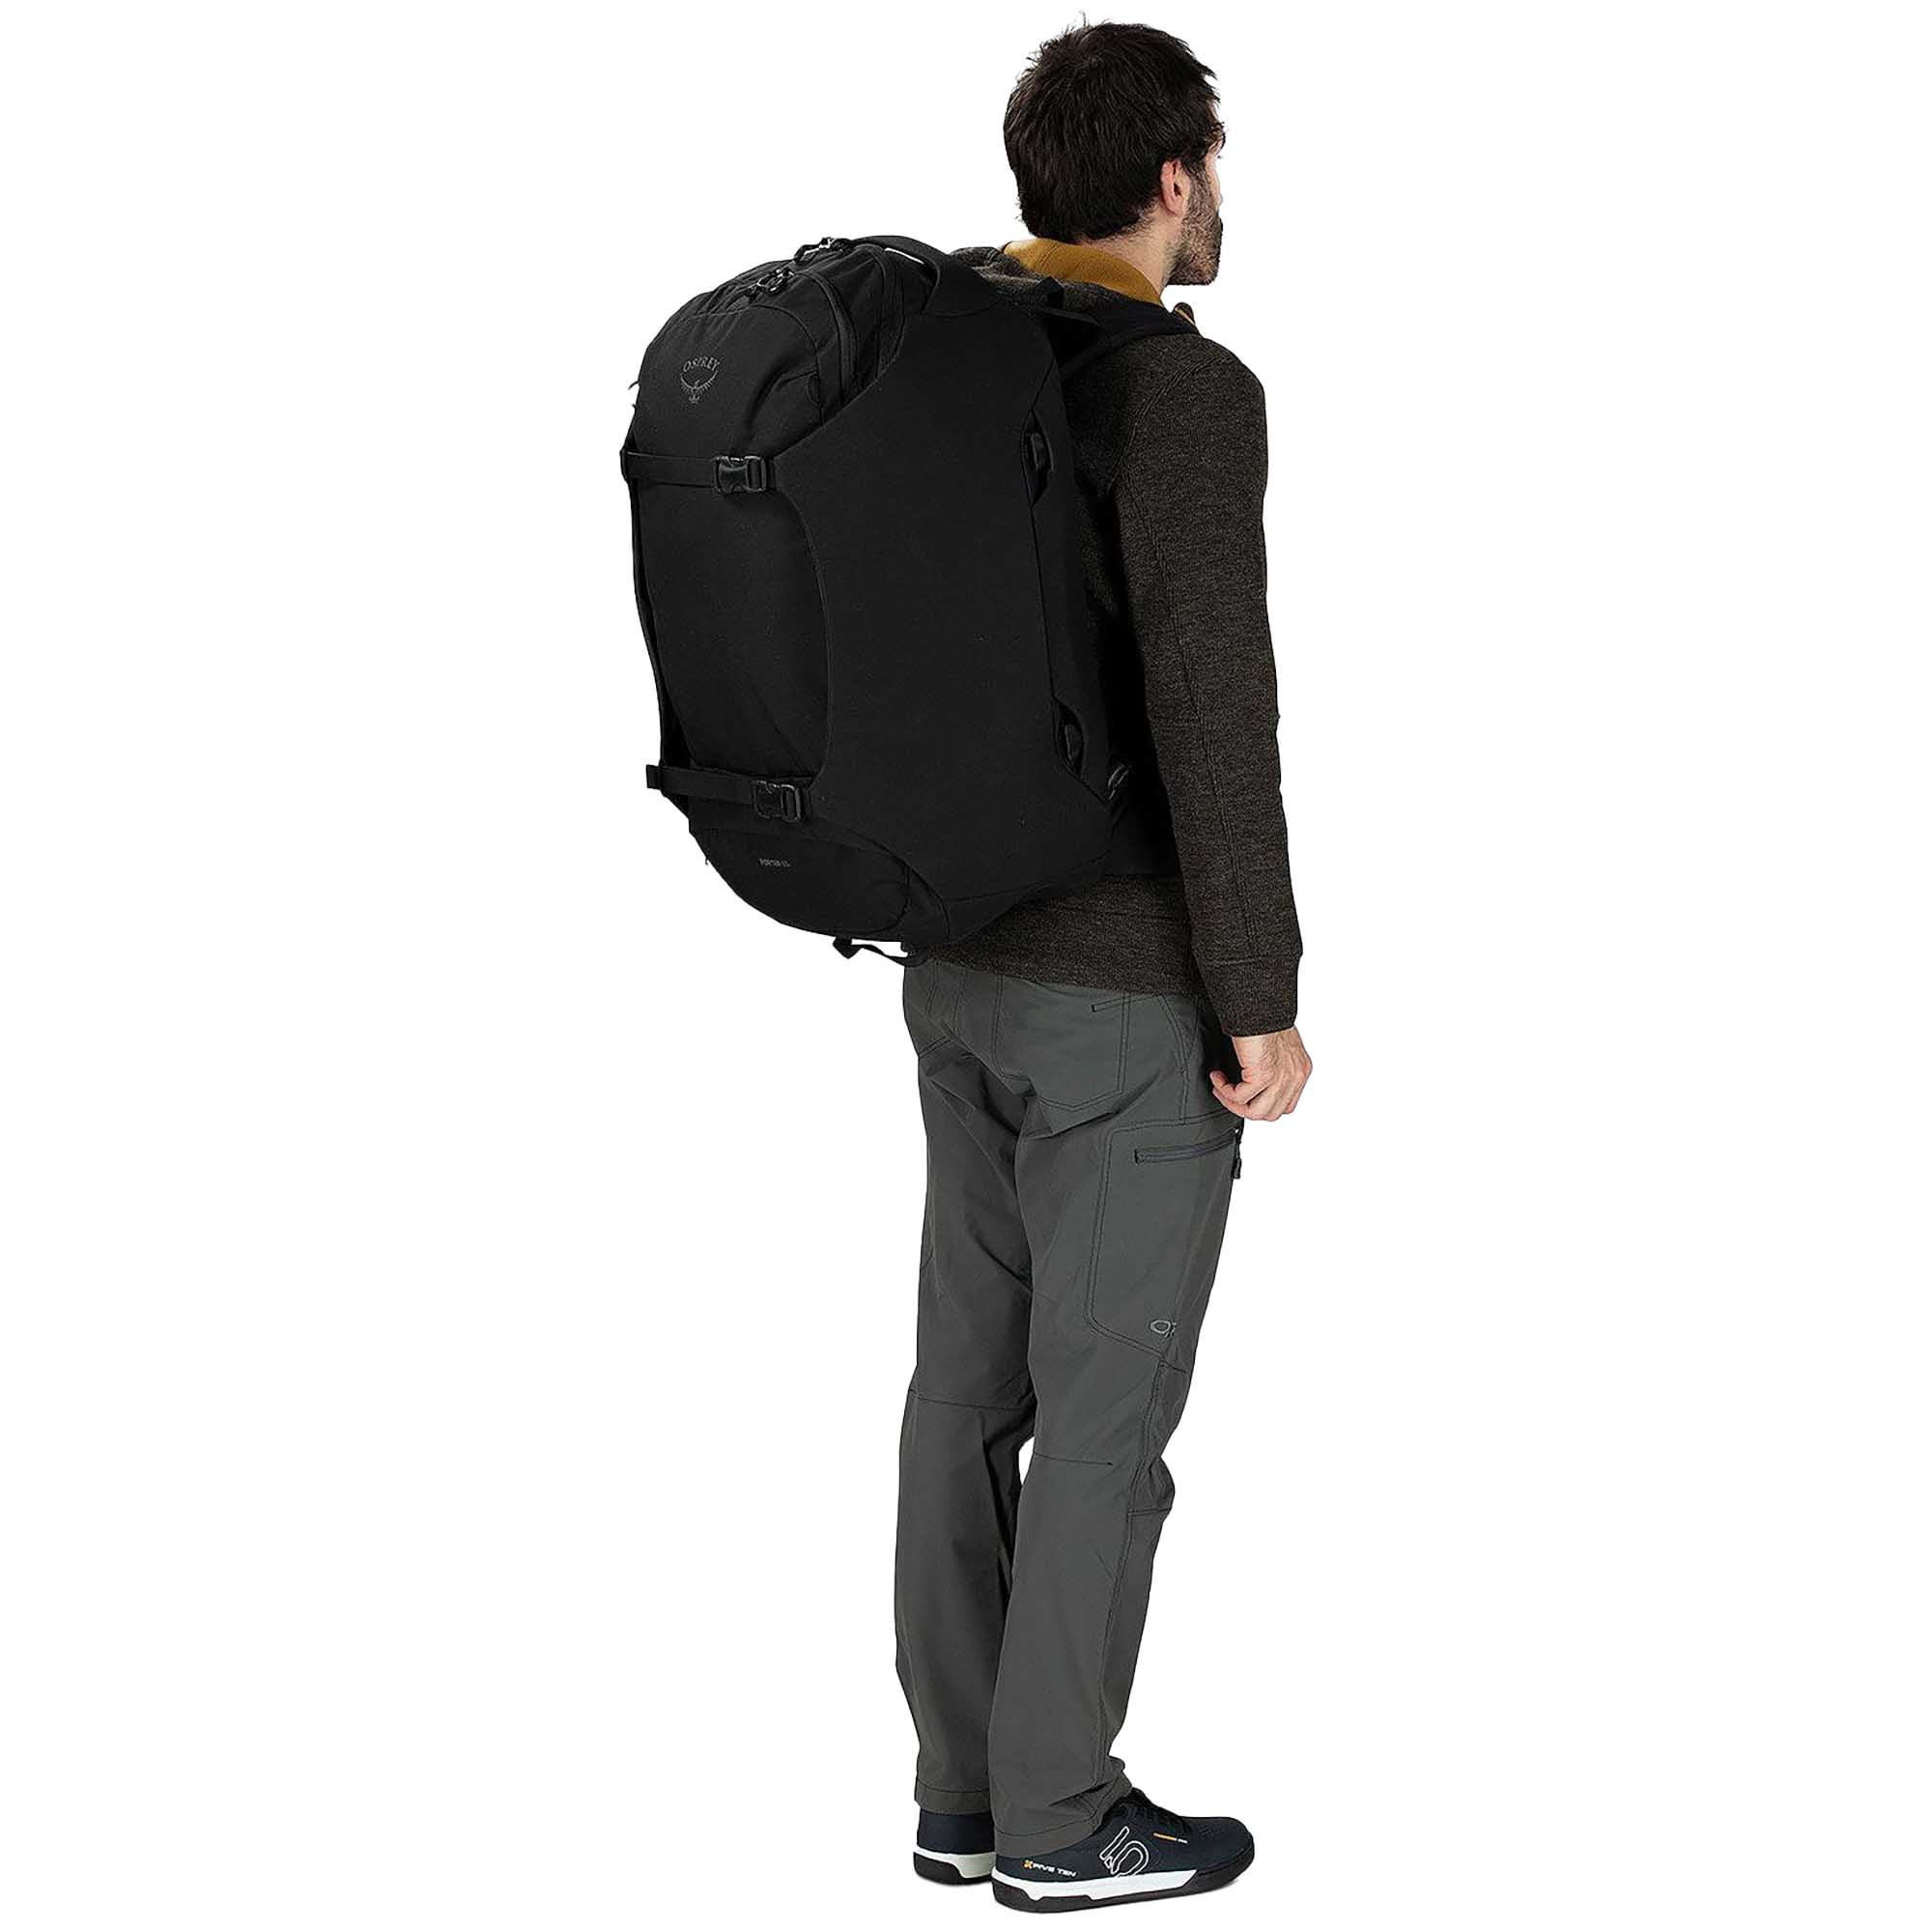 Osprey Sojourn Porter 65 Travel Backpack